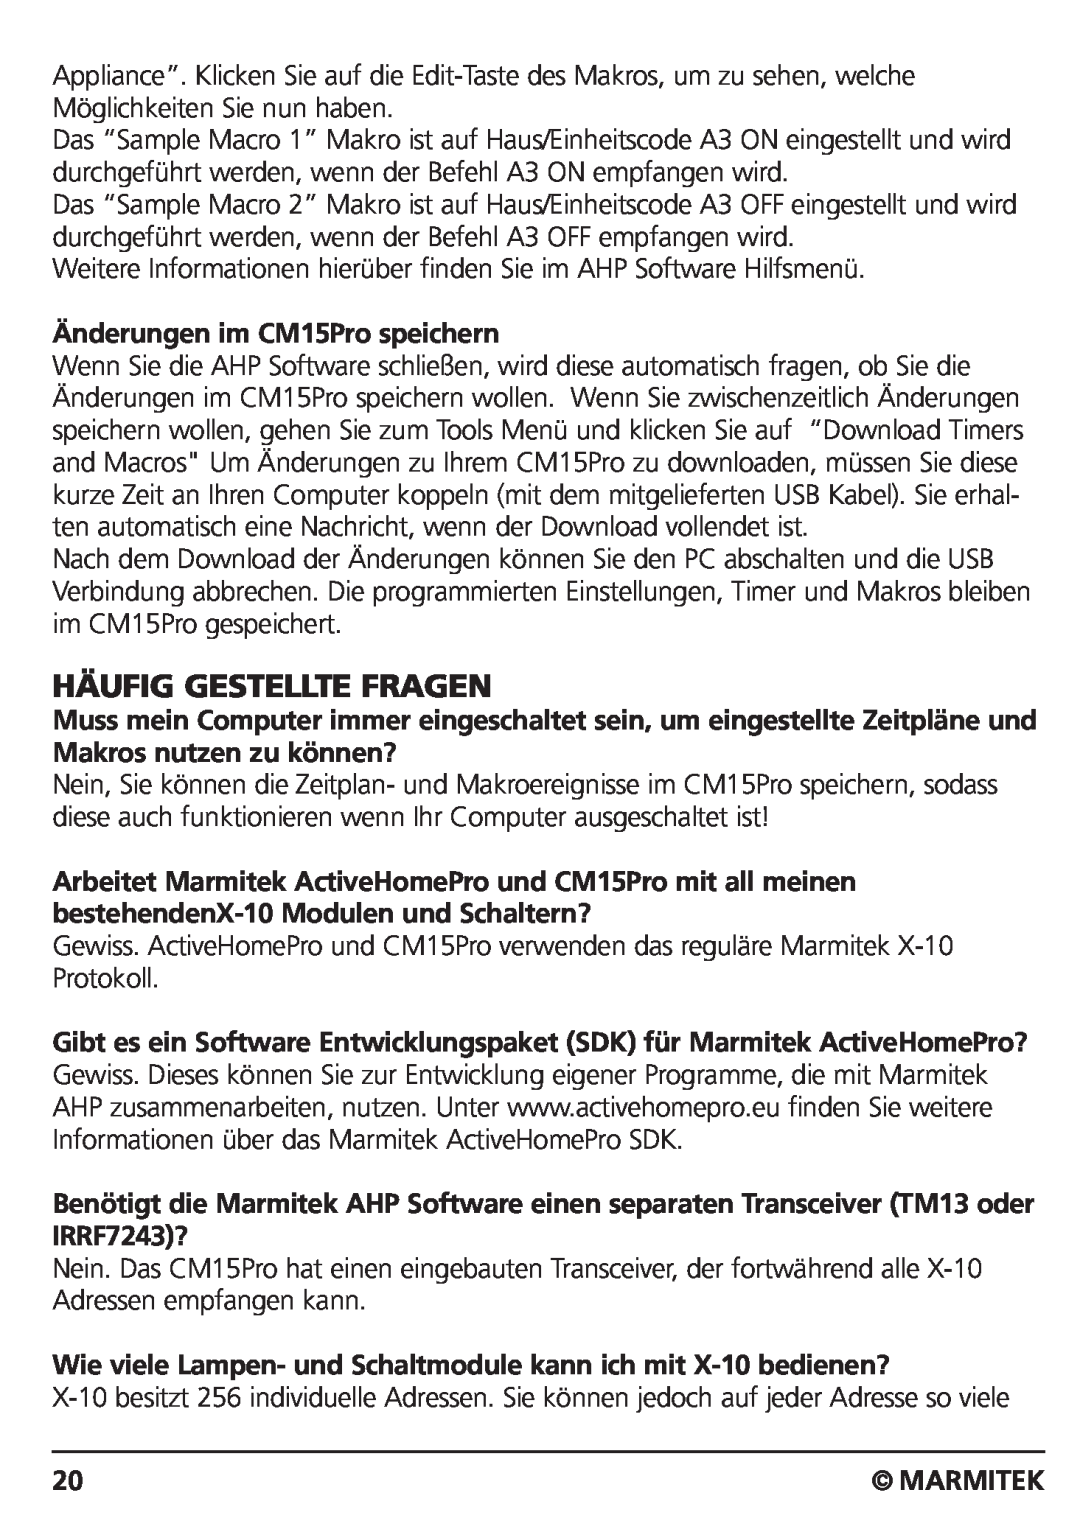 Marmitek CM15PRO manual Häufig Gestellte Fragen, Änderungen im CM15Pro speichern, Marmitek 